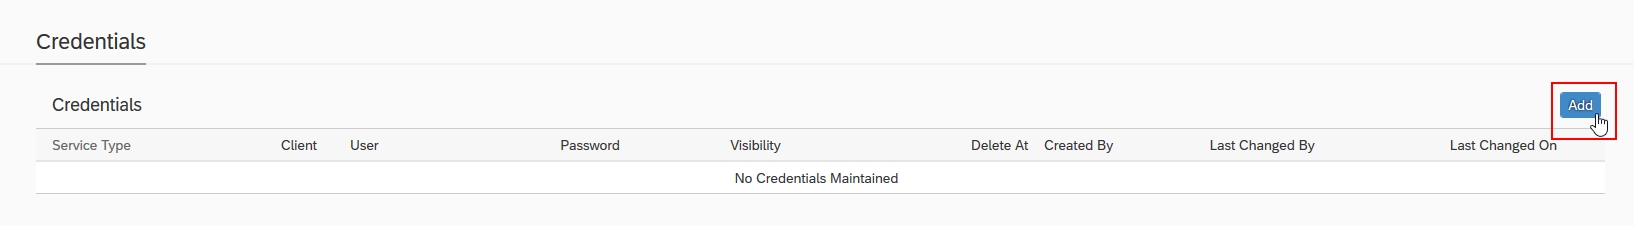 Darstellung des SAP Tutorials zu Credentials